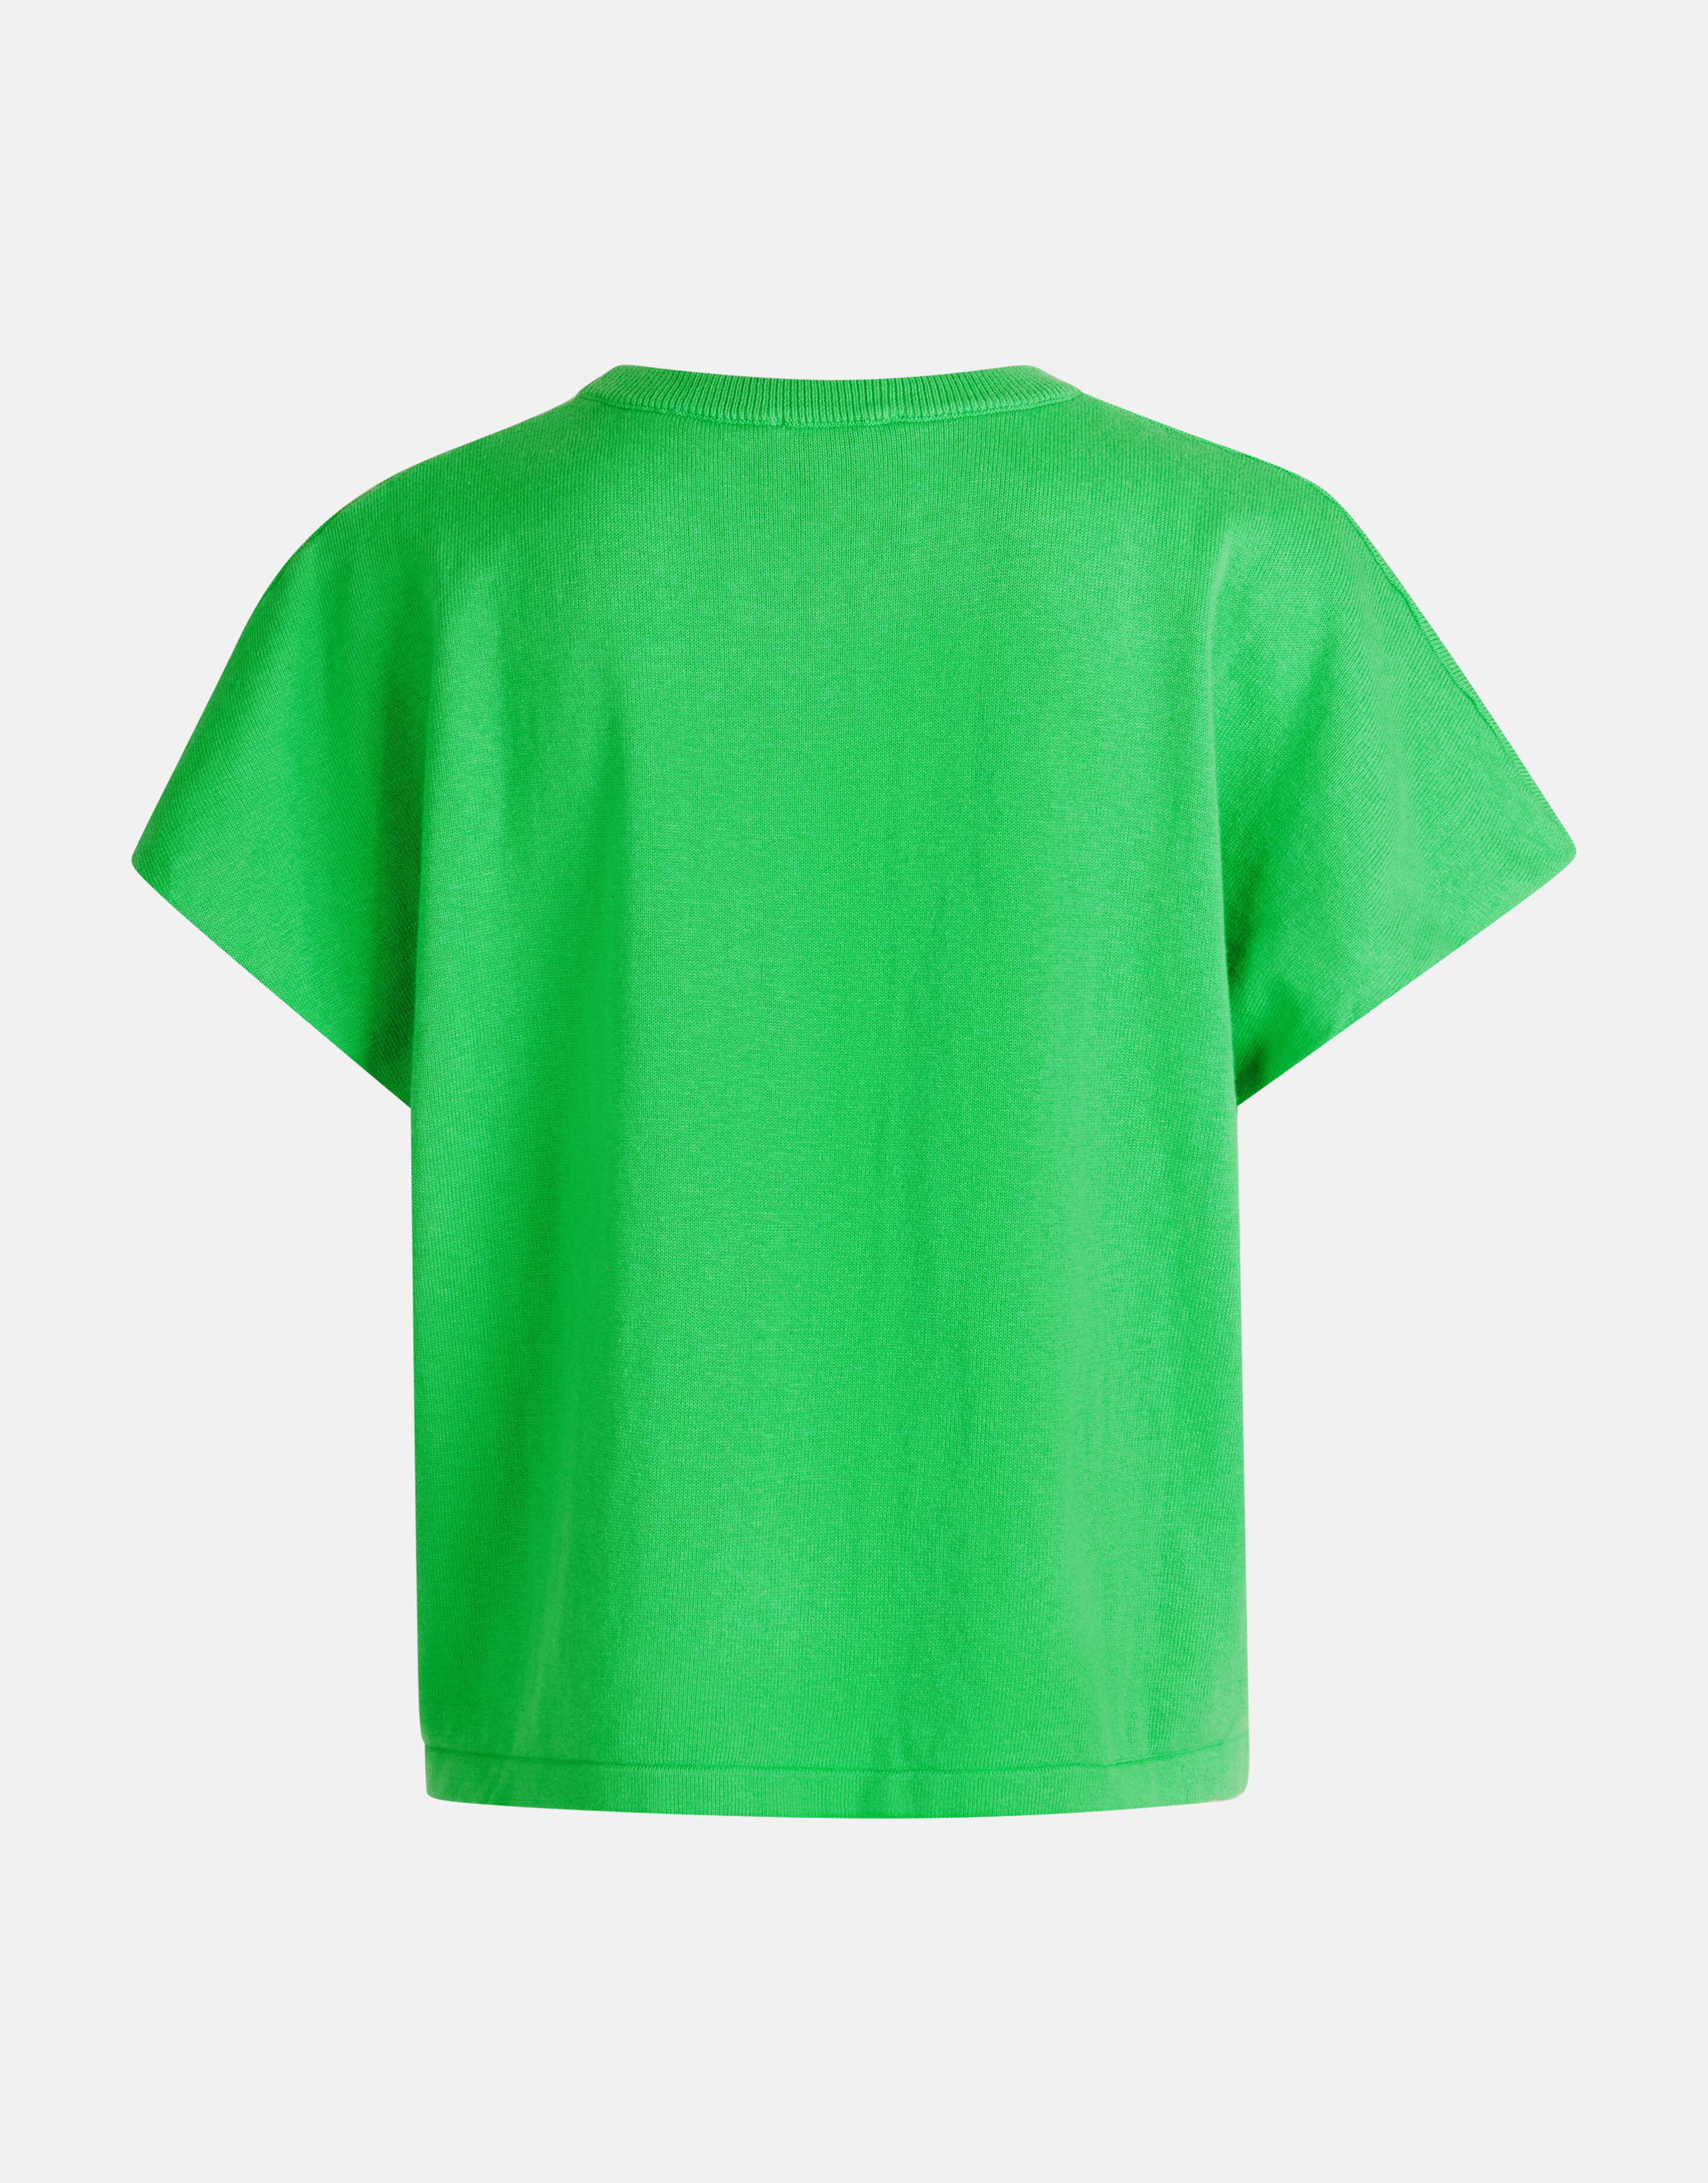 Gestricktes T-shirt Grün von Mieke SHOEBY WOMEN